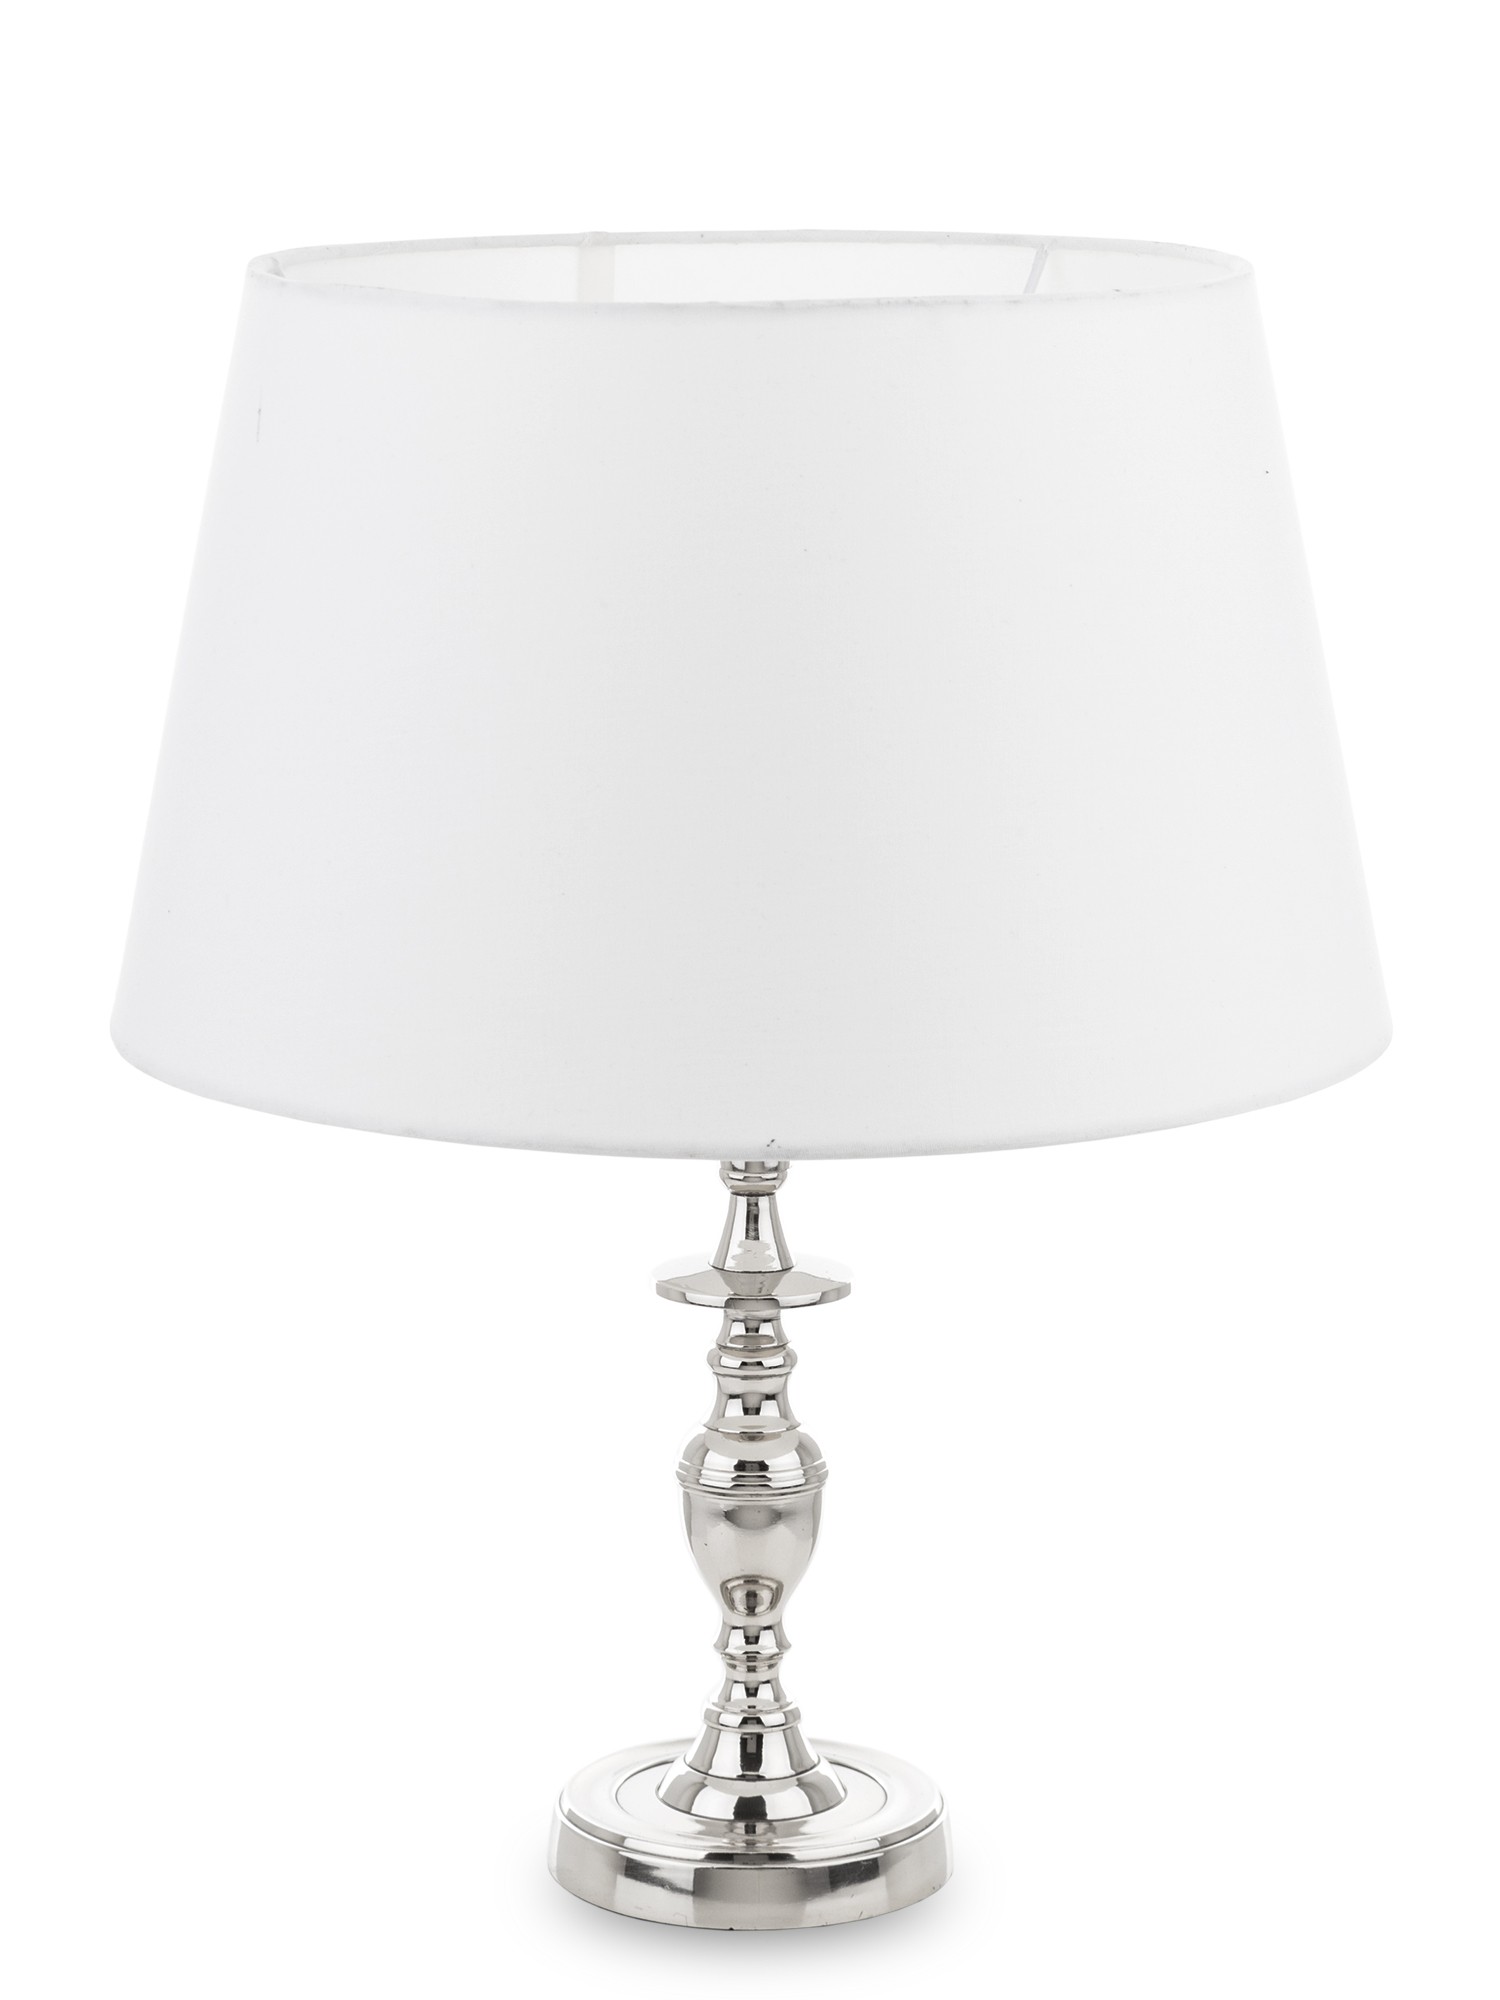 Lampa srebrna z białym abażurem 145763 Art-Pol